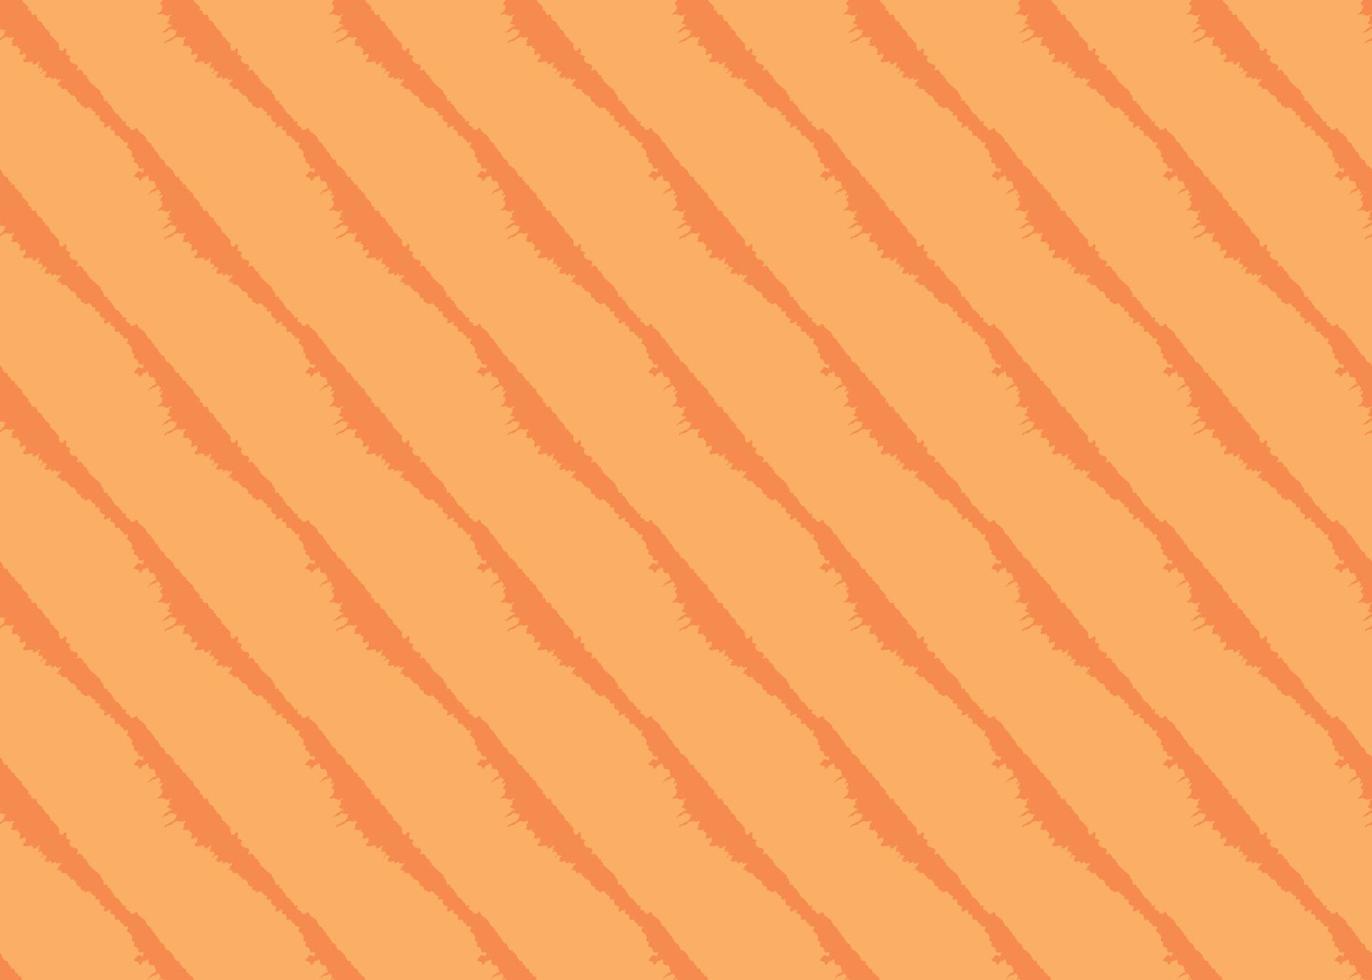 fundo da textura do vetor, padrão sem emenda. mão desenhada, cores laranja. vetor